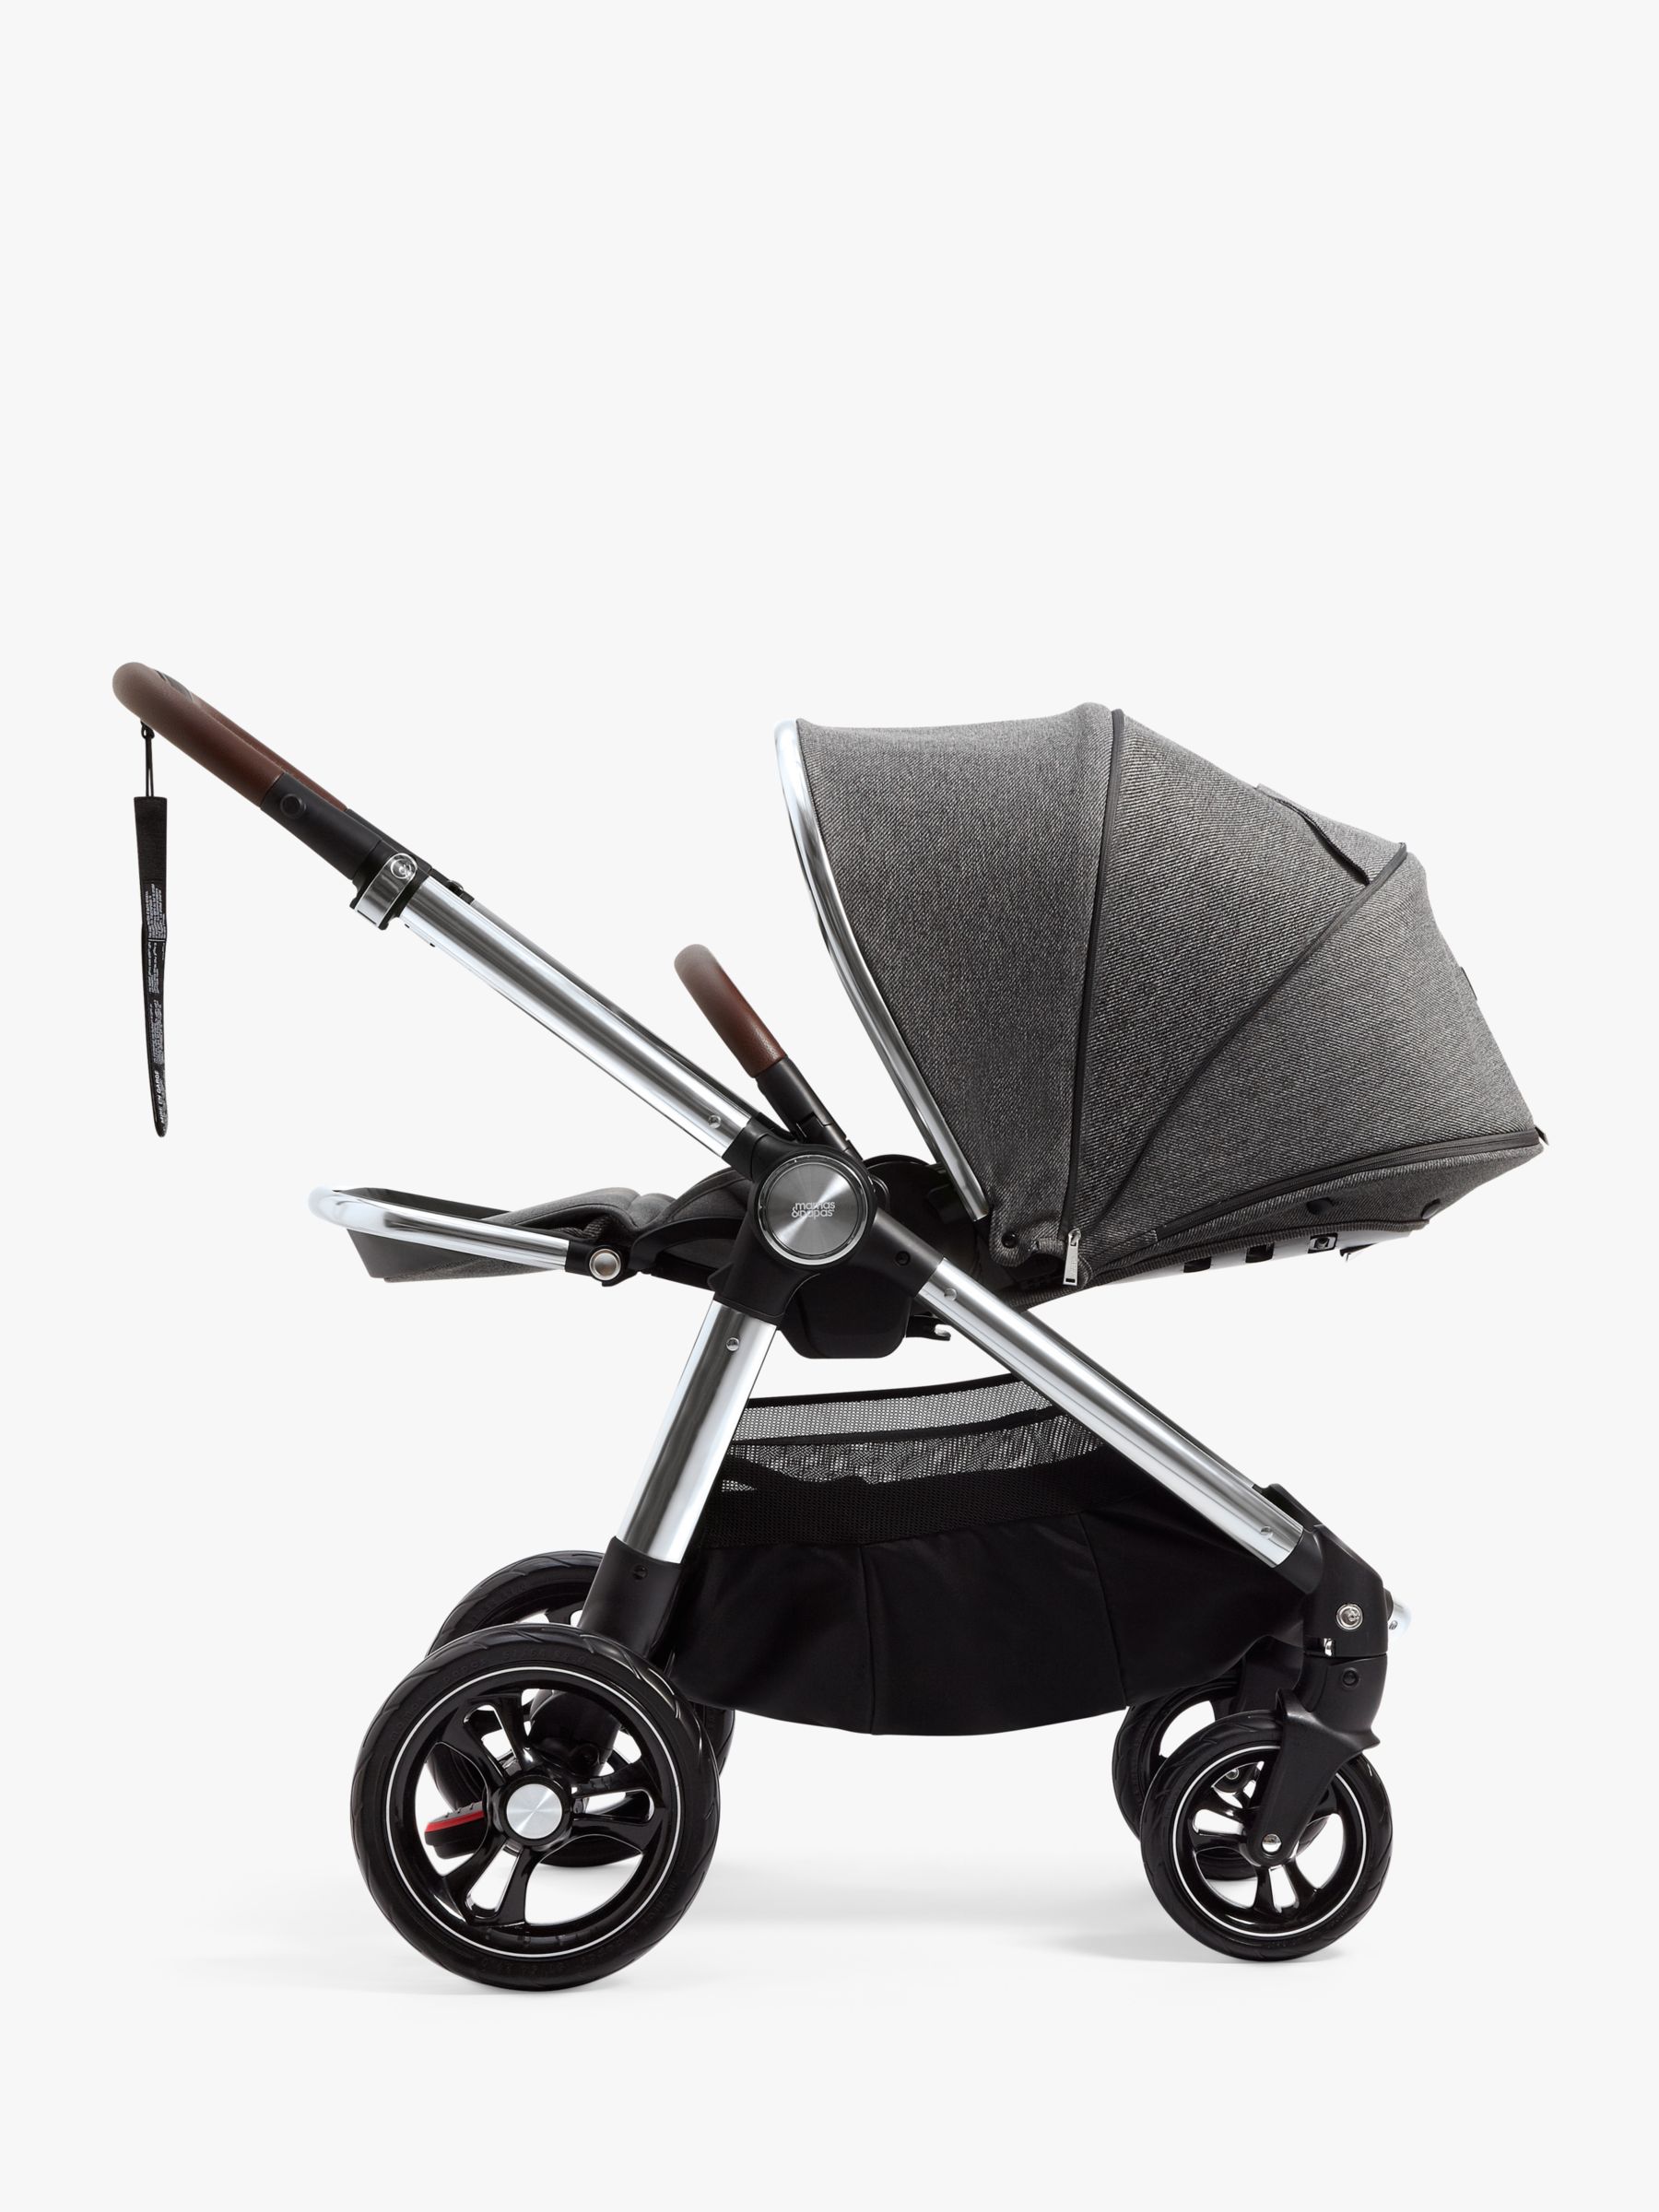 parasol for mamas and papas ocarro